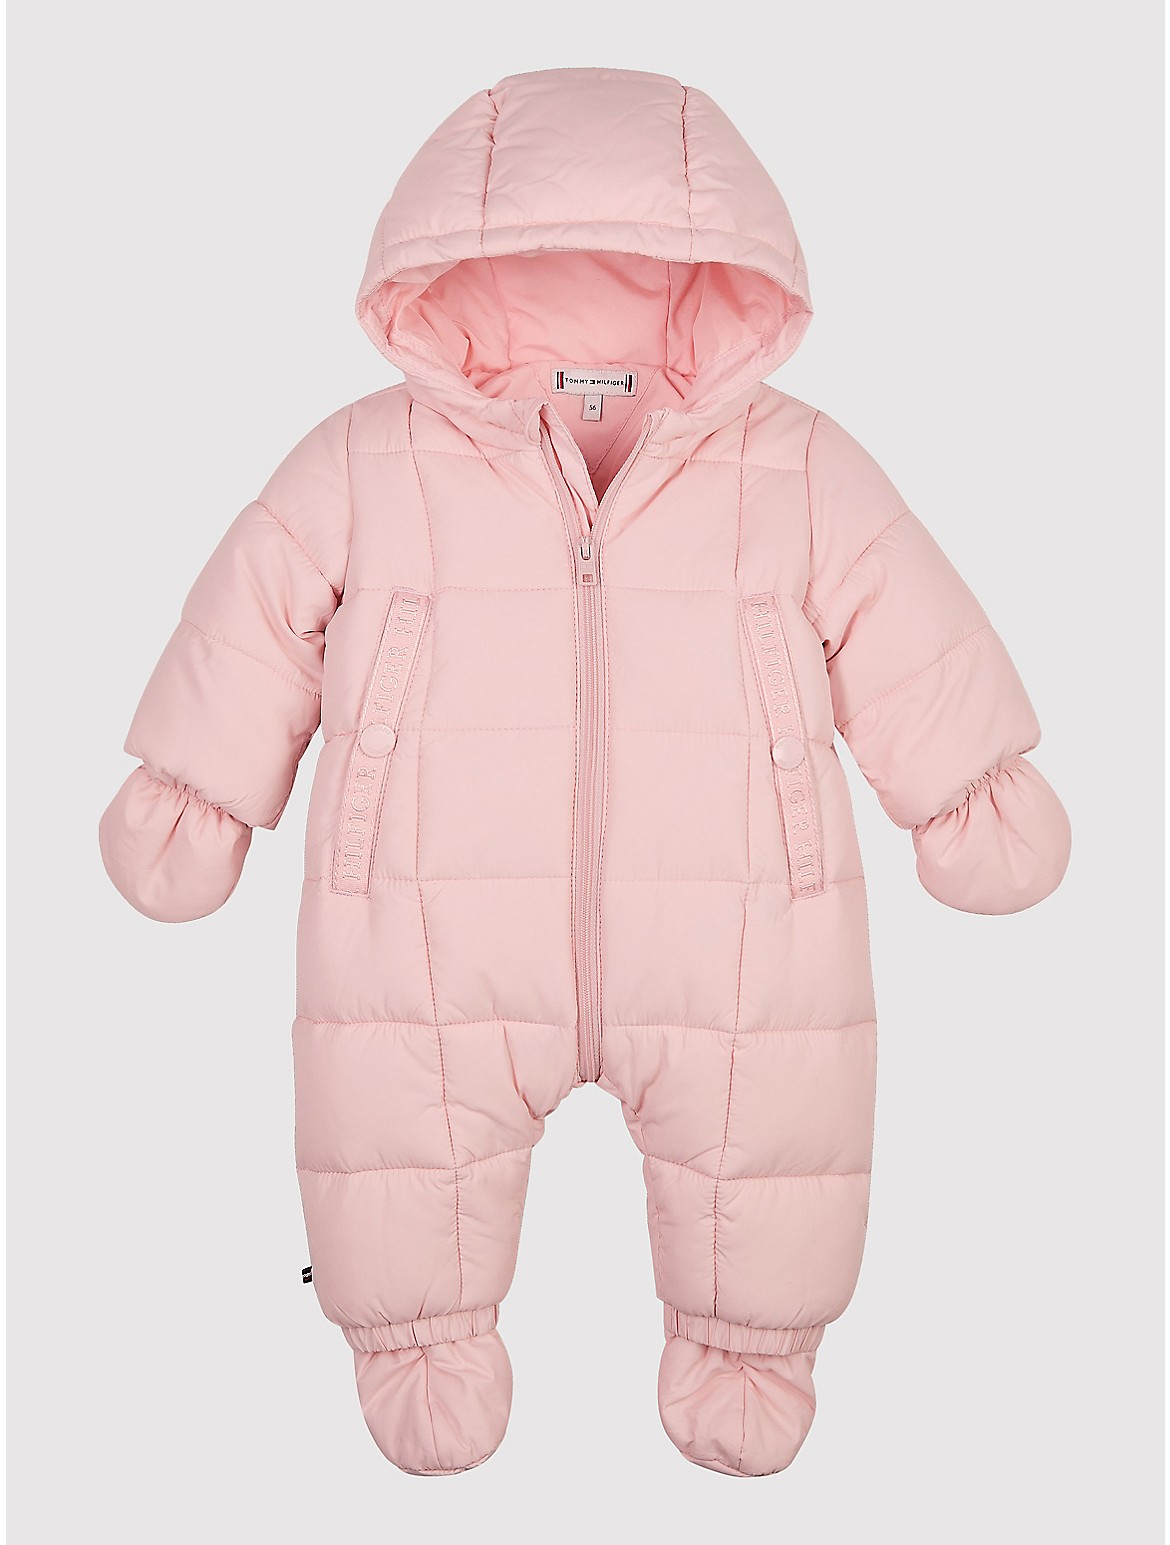 Tommy Hilfiger Babies' Ski Suit Set - Pink - 18M